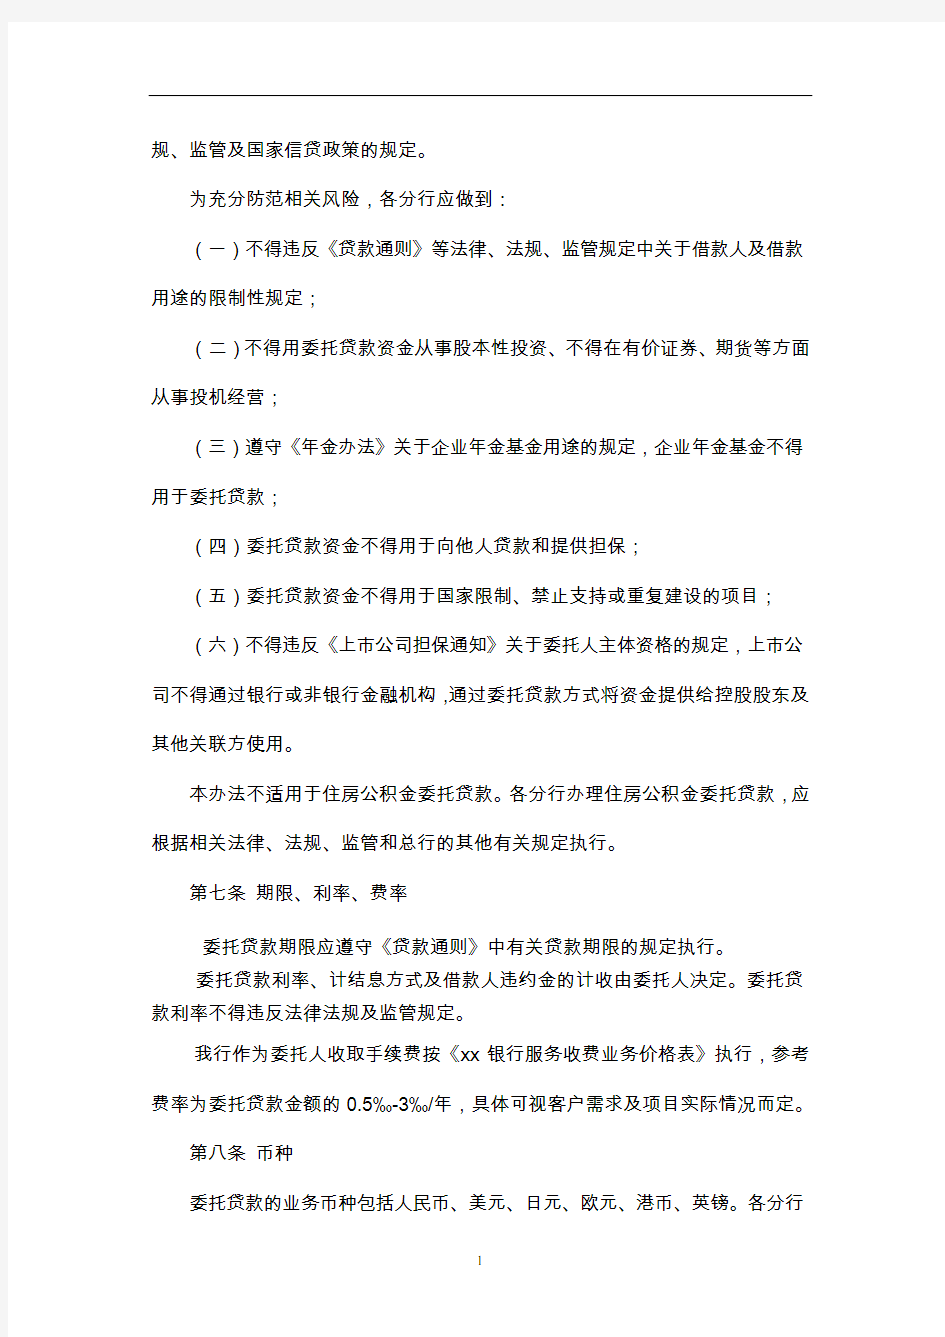 中国银行股份有限公司委托贷款管理办法